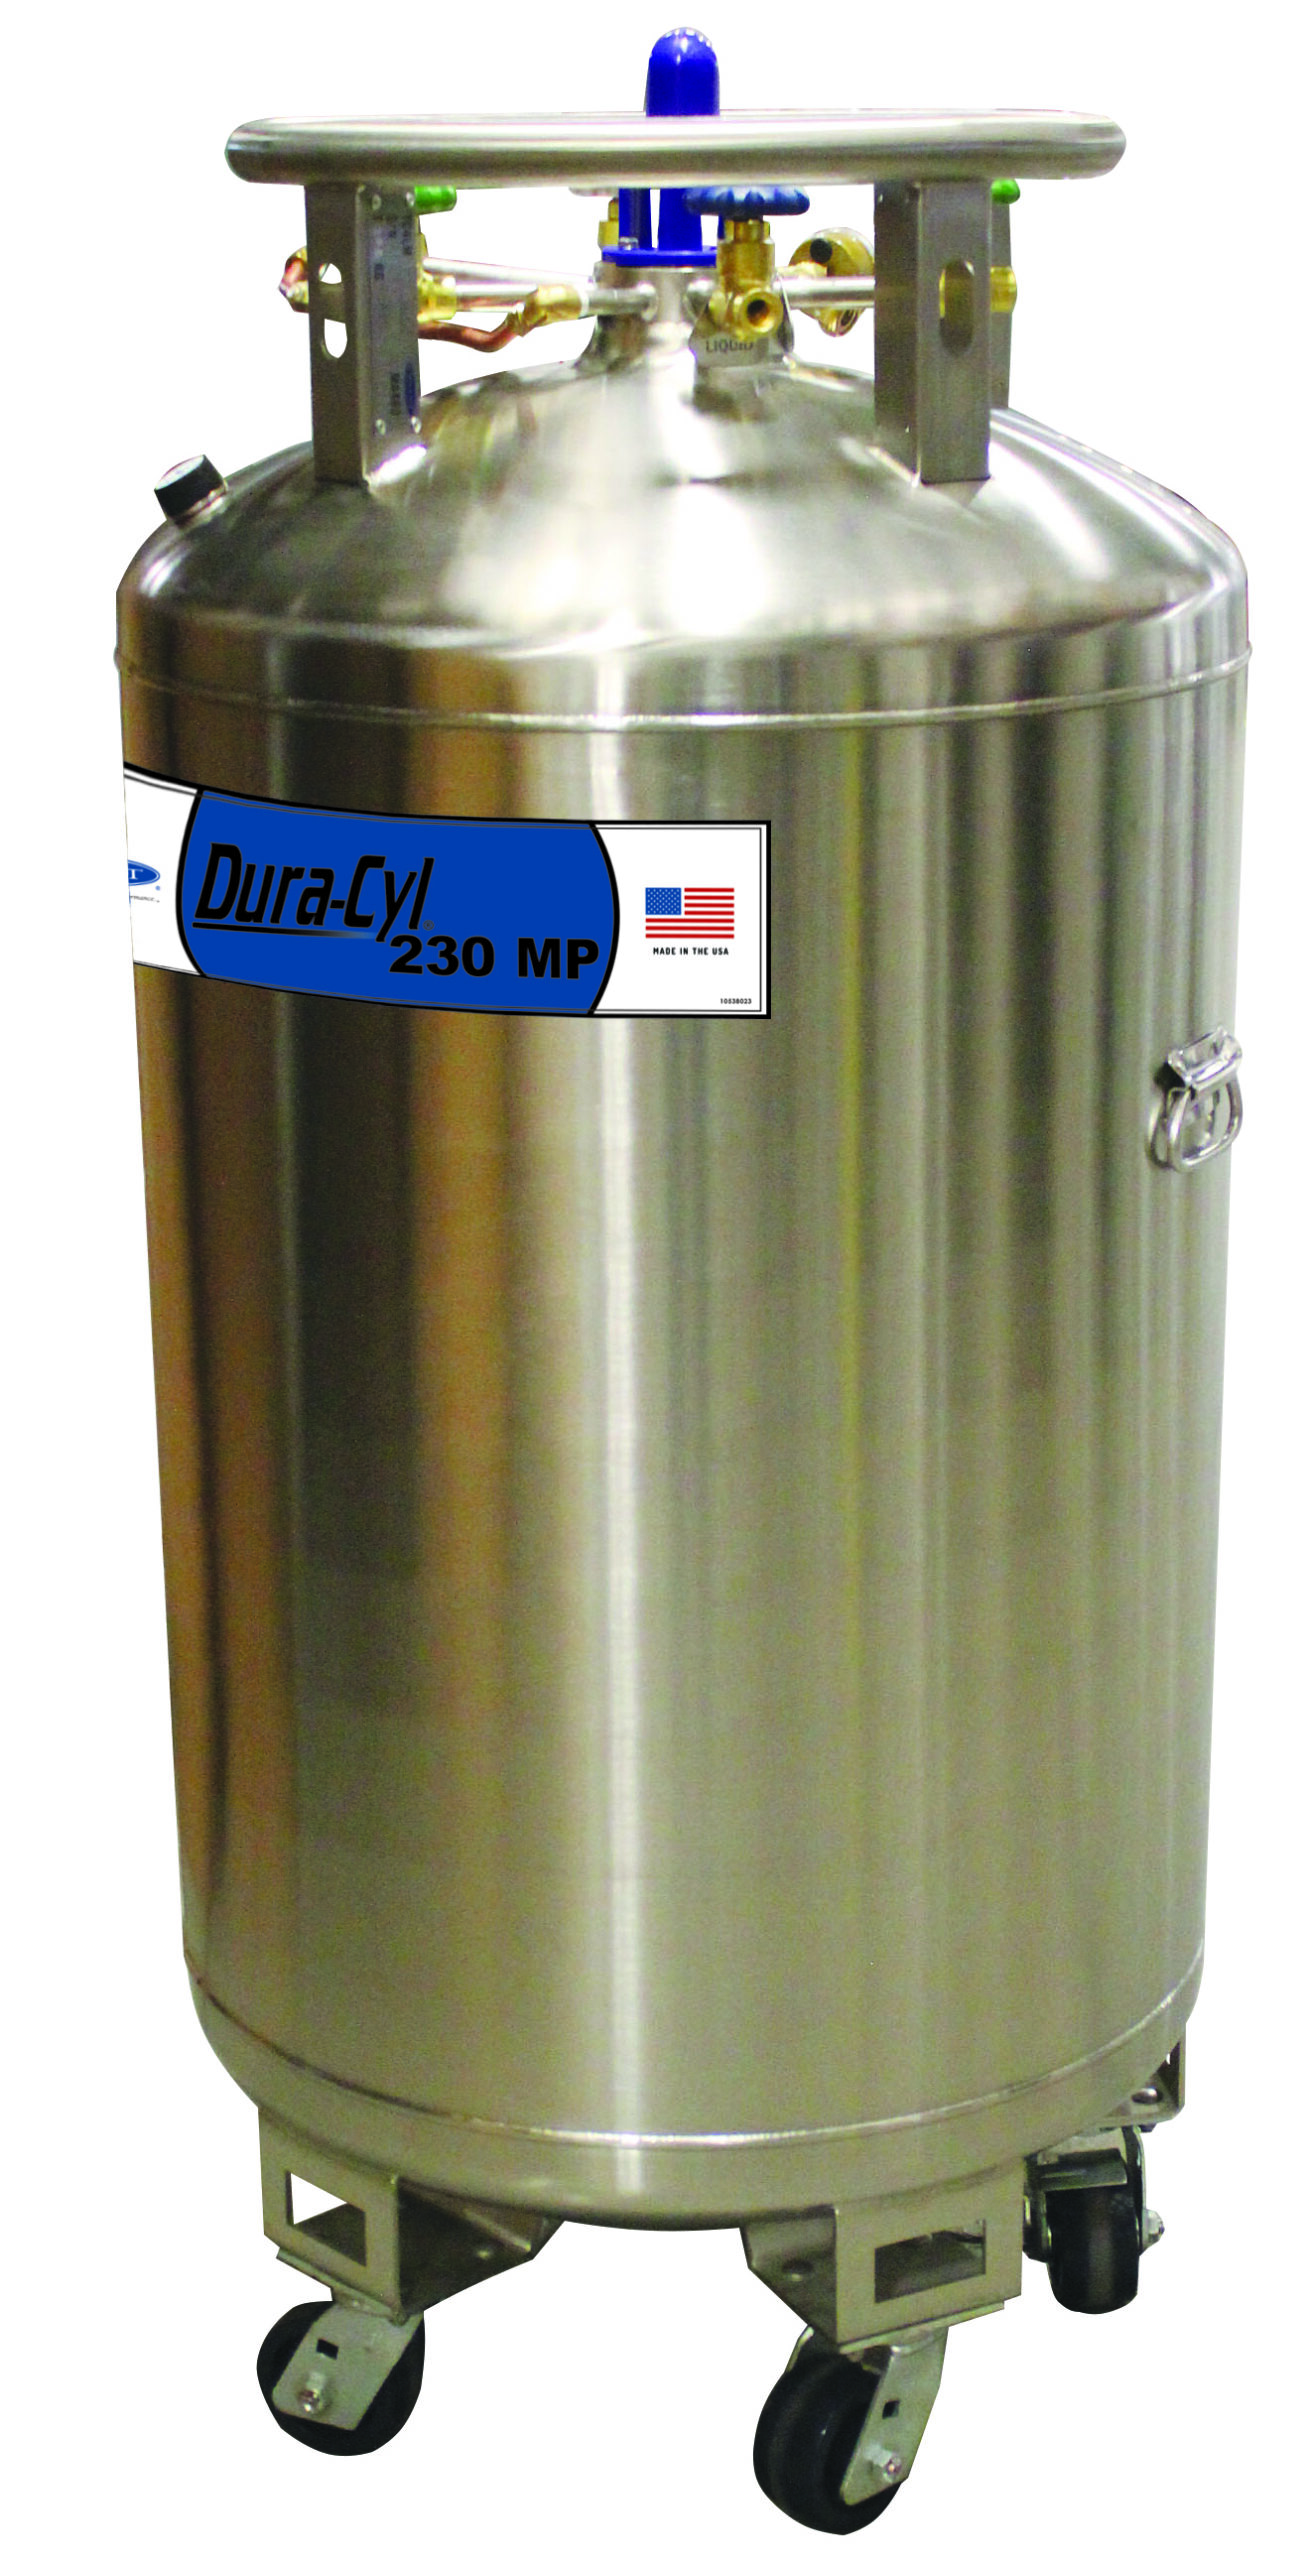 10L Liquid Nitrogen Dewar - Liquid Nitrogen Tank Container LN2 Dewar with  Straps